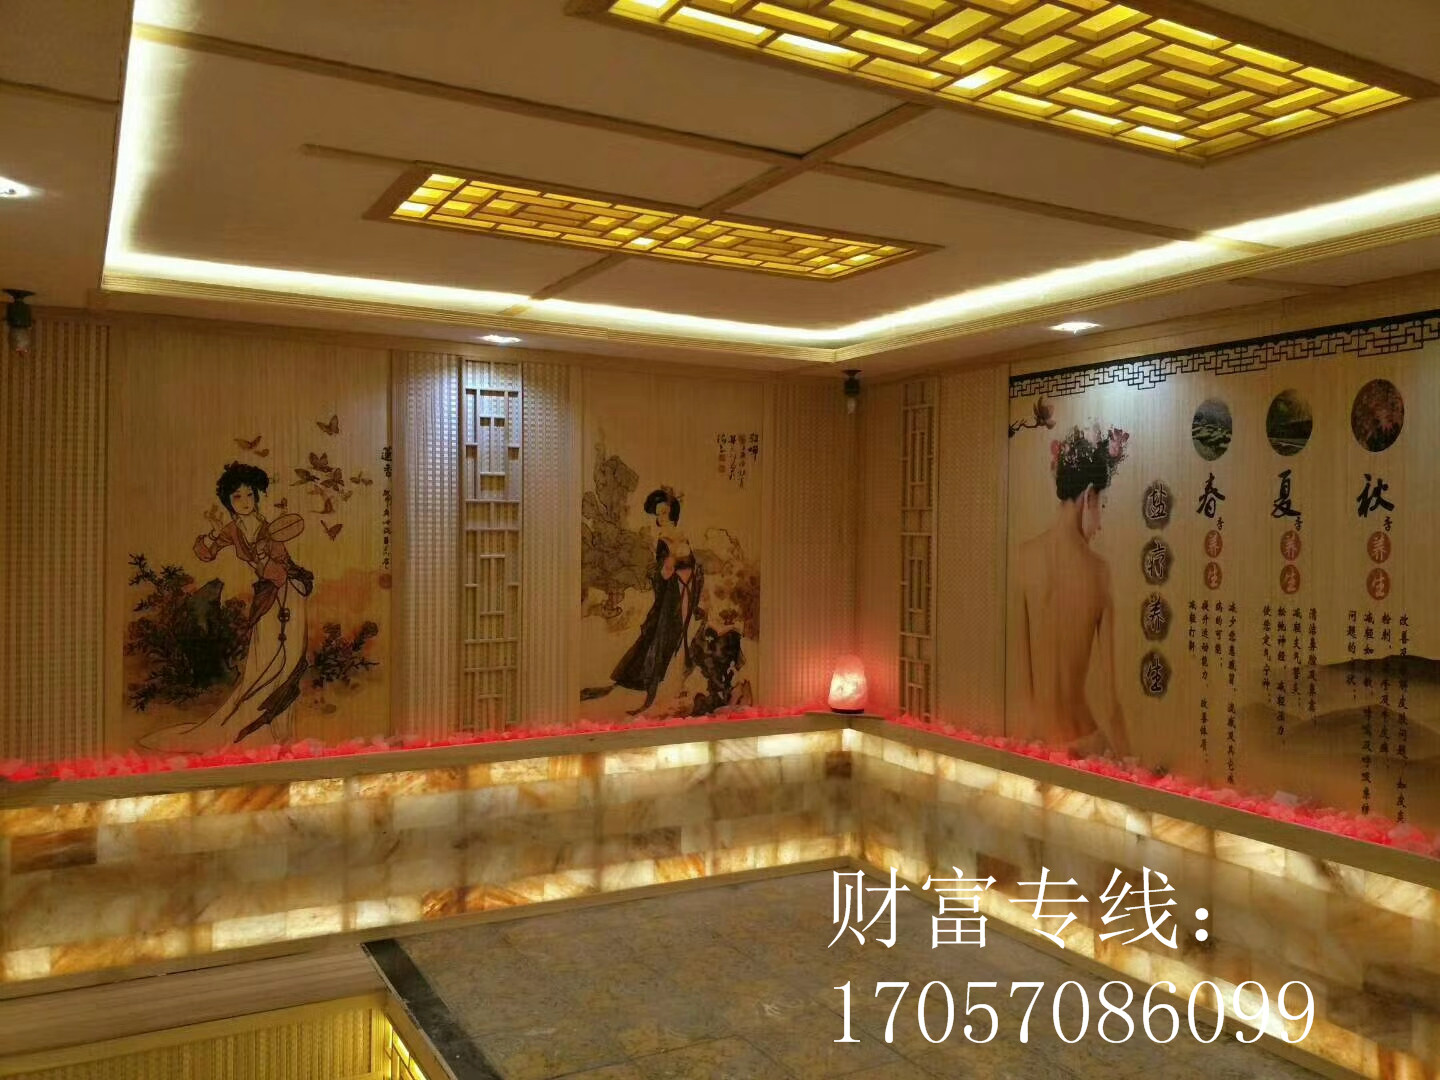   热闻√武汉市2019年家庭式汗蒸房设计安装—欢迎您